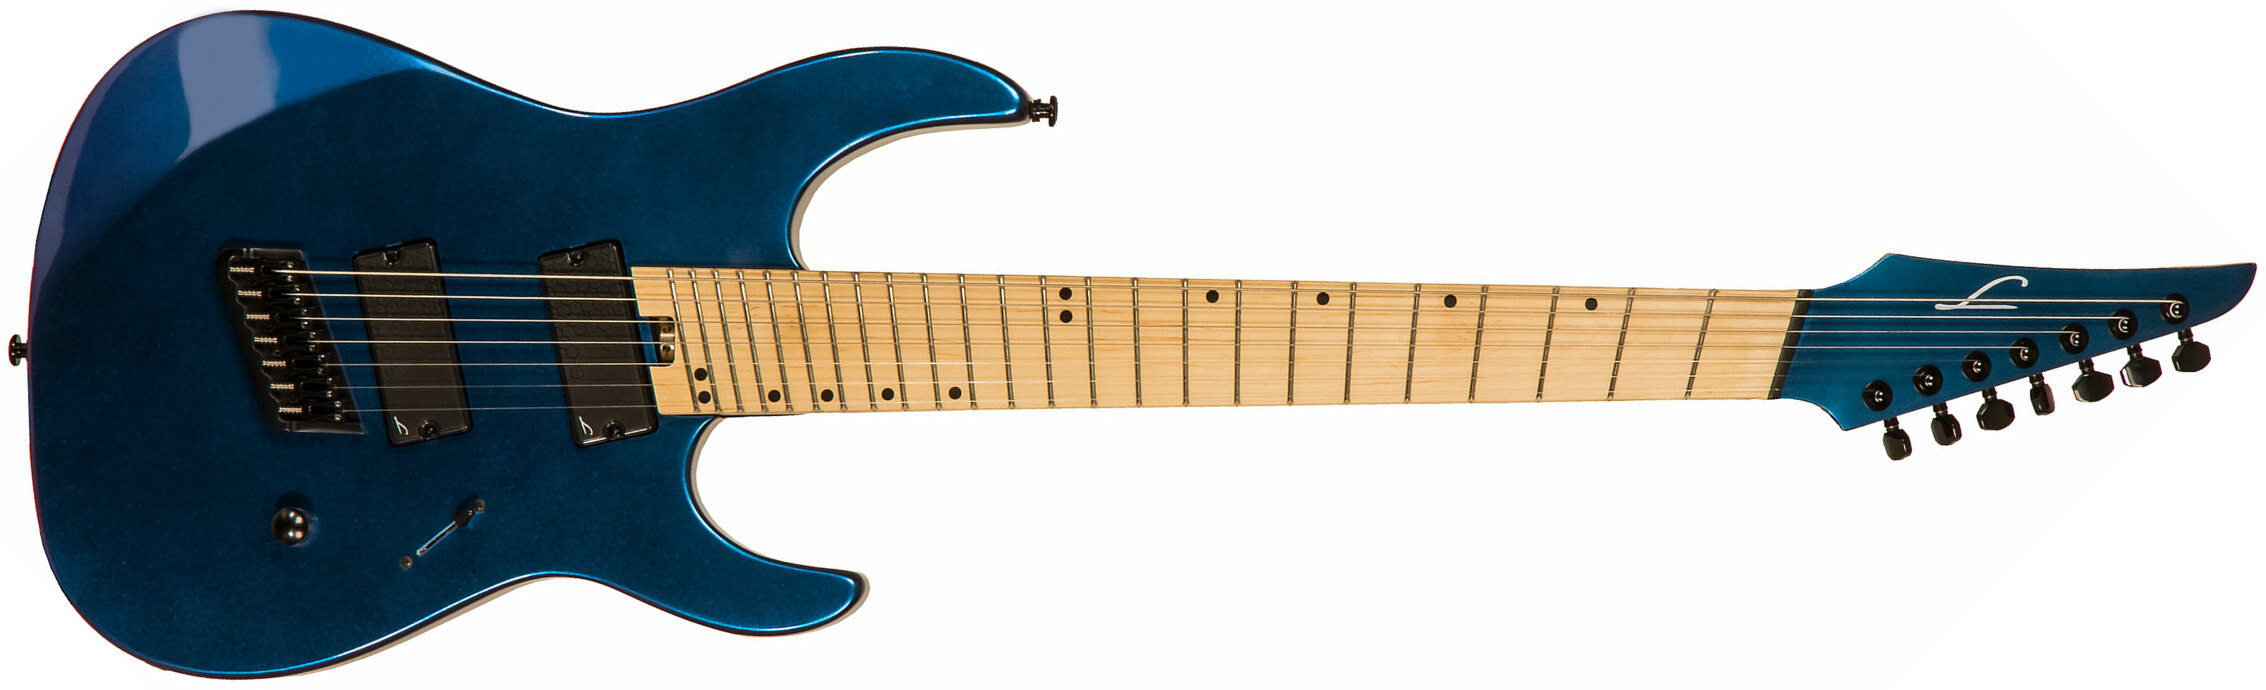 Legator N7fs Ninja S 7c Multiscale 2h Ht Mn - Lunar Eclipse - Multi-Scale Guitar - Main picture